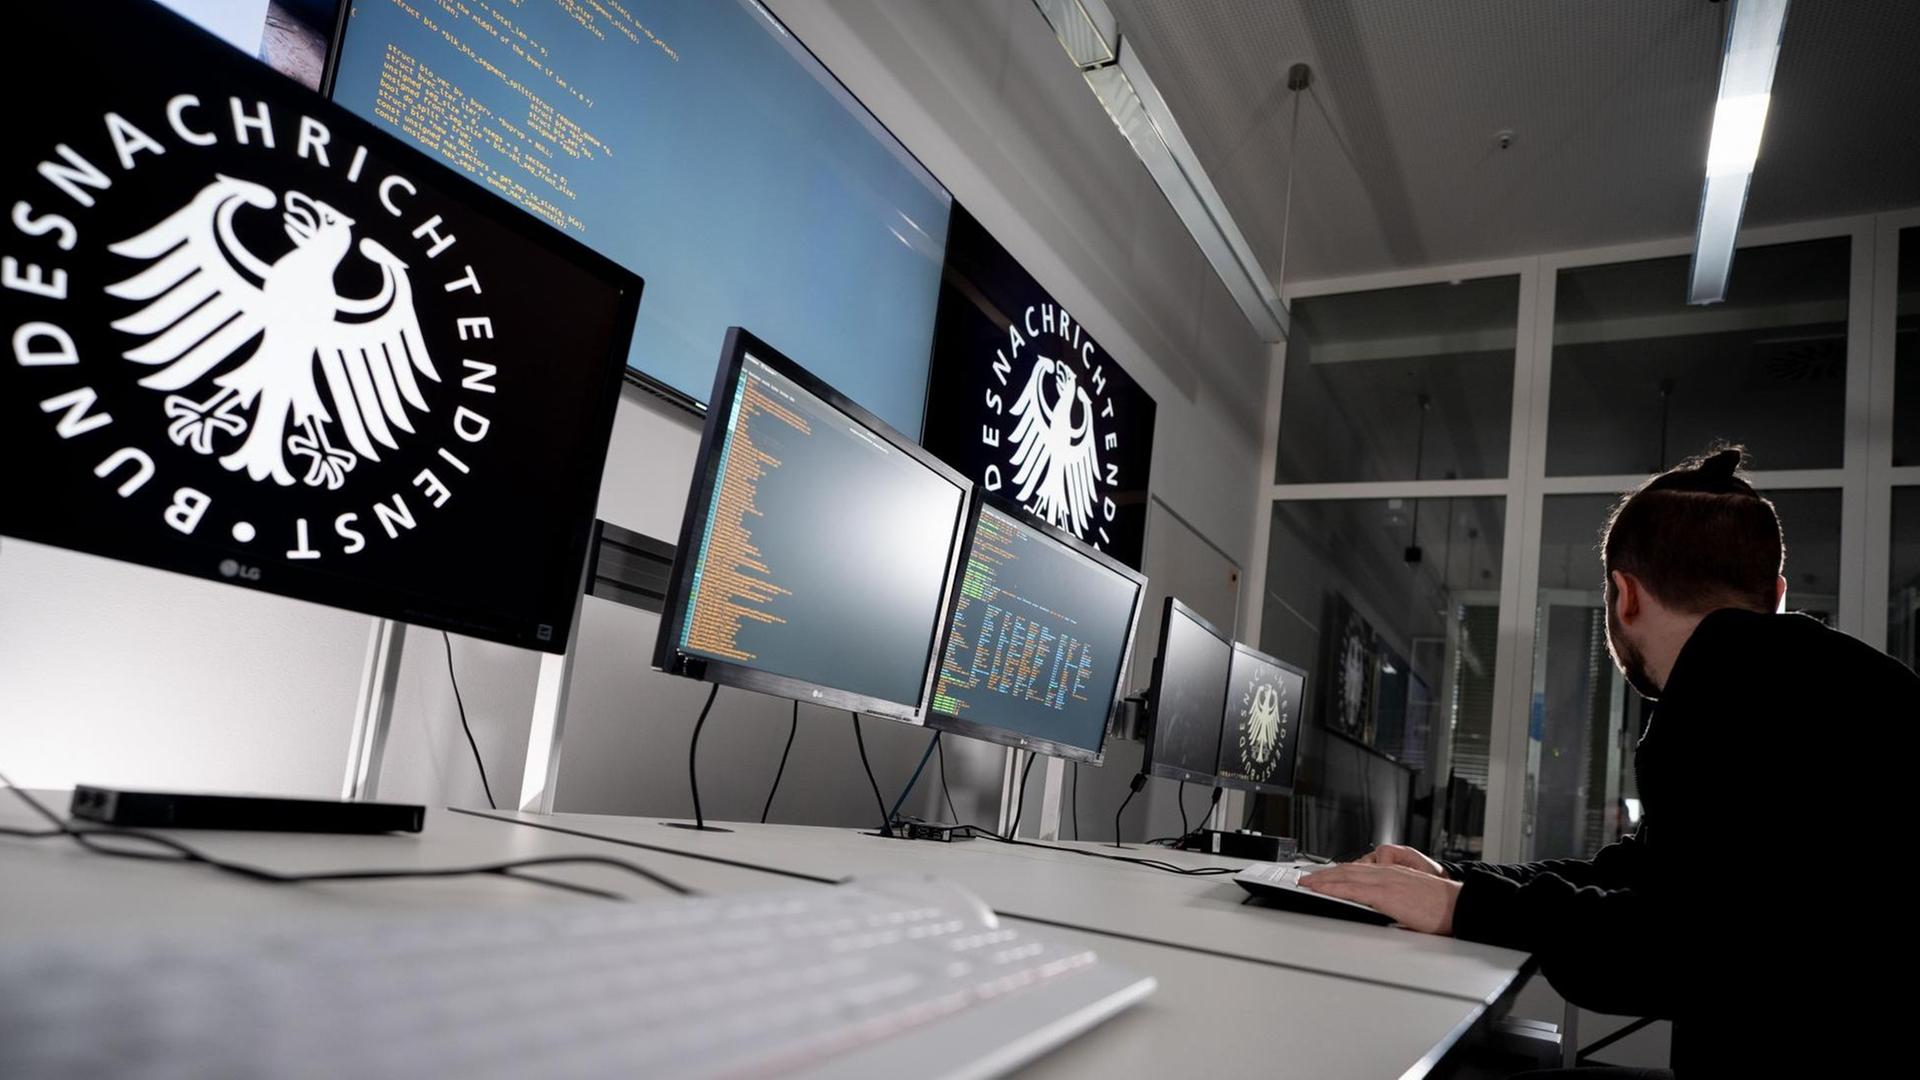 Lukas, Informatiker und Hacker, beim Bundesnachrichtendienst (BND) sitzt vor Bildschirmen. Der BND startet eine Kampagne zur Einstellung von Hackern.